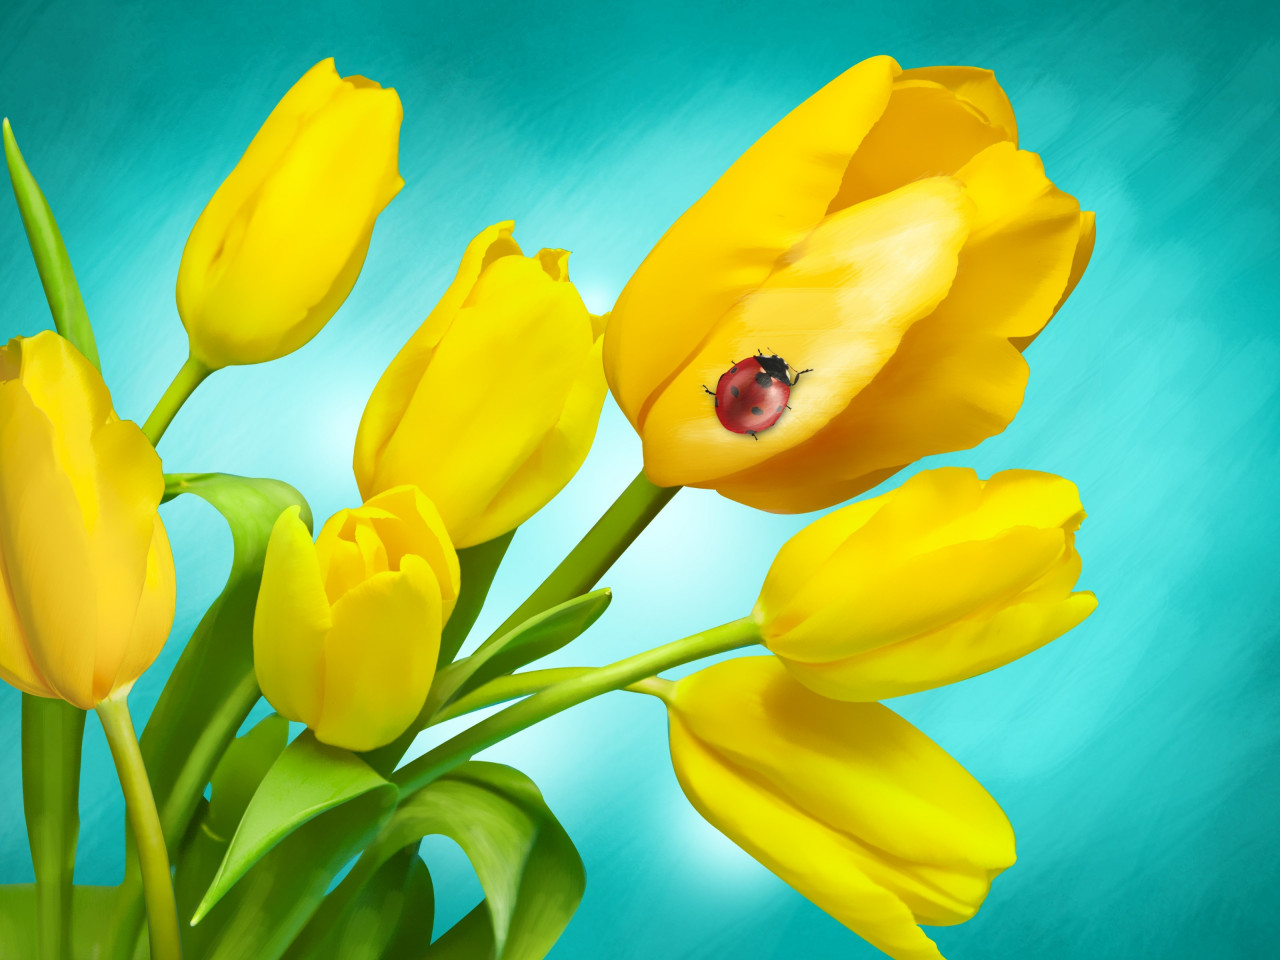 Ladybird on yellow tulips wallpaper 1280x960